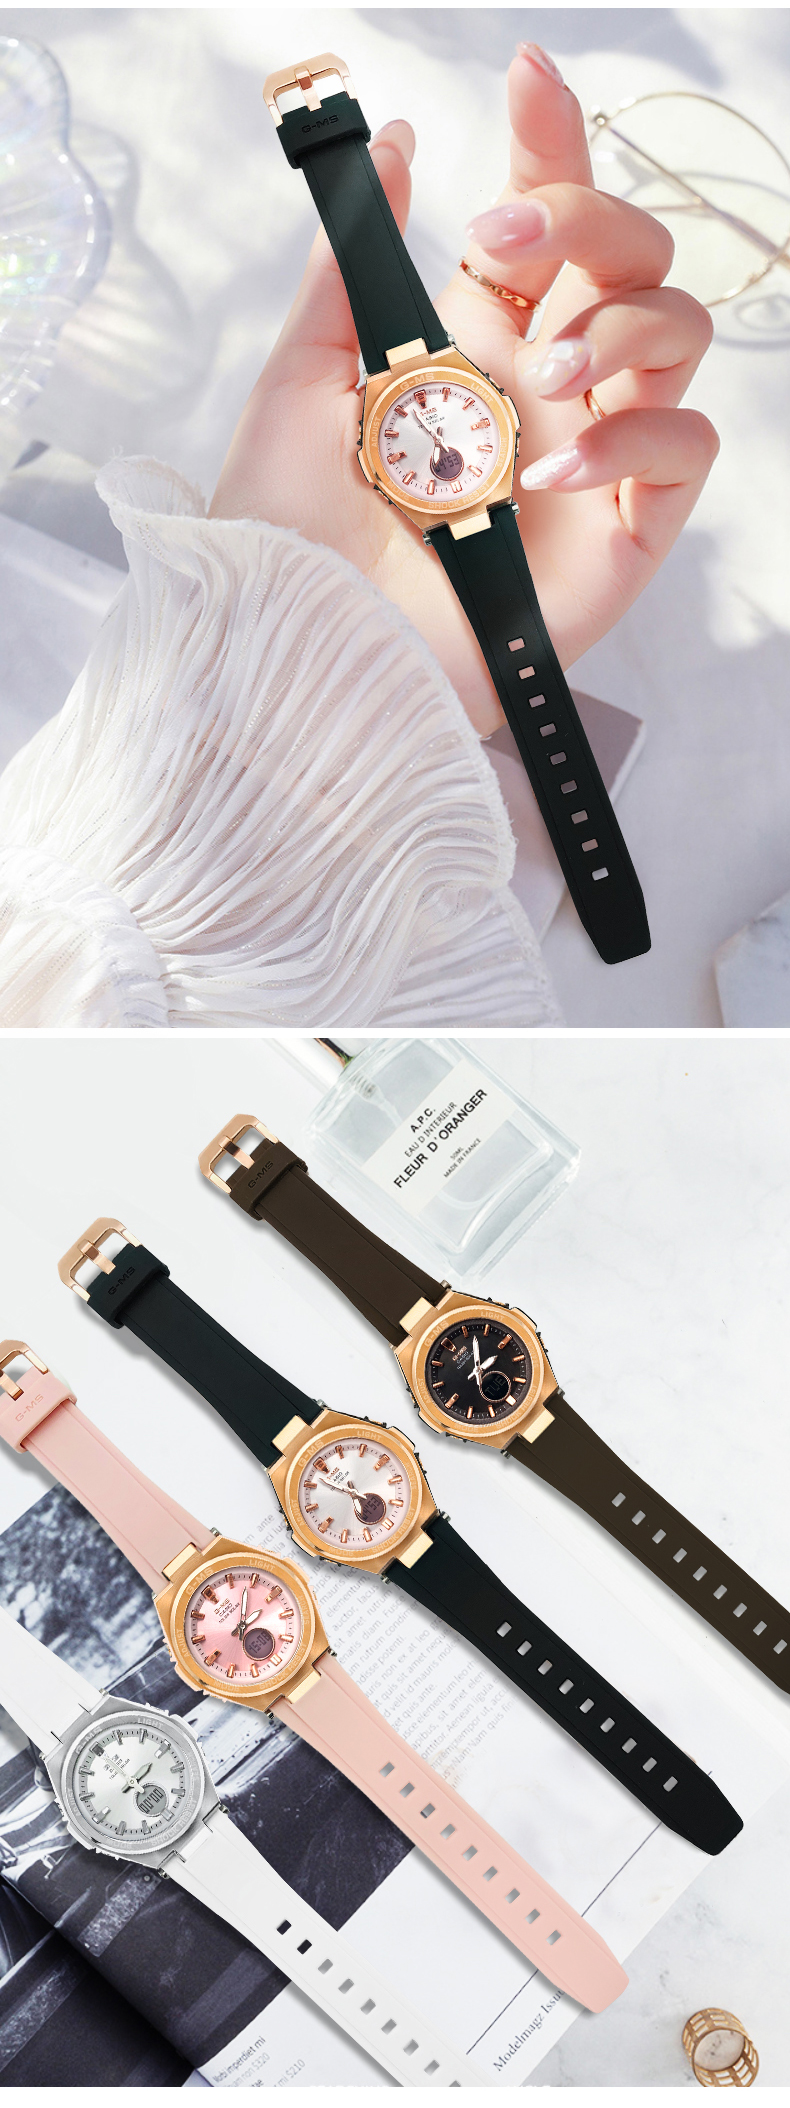 รูปภาพรายละเอียดของ นาฬิกา Casio ของแท้ BABY-G MSG-S200G-1A นาฬิกาข้อมือผญ นาฬิกาอิเล็กทรอนิกส์สปอร์ตพลังงานแสงอาทิตย์  (มี 4 สีให้เลือก) คาสิโอ นาฬิกาข้อมือผู้หญิง